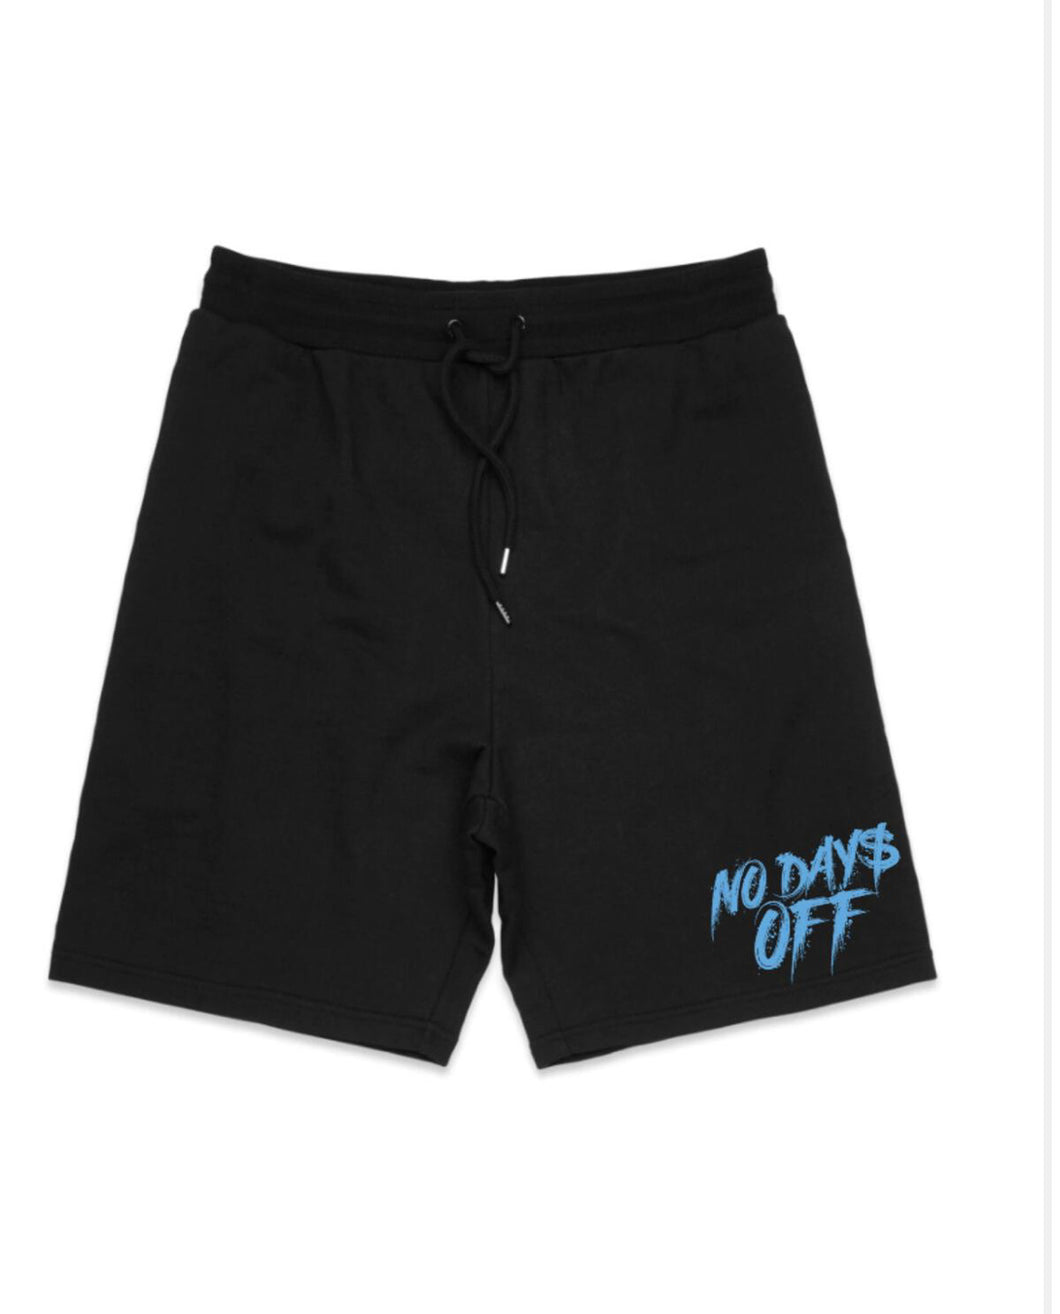 PB| “No Day$ Off” Shorts